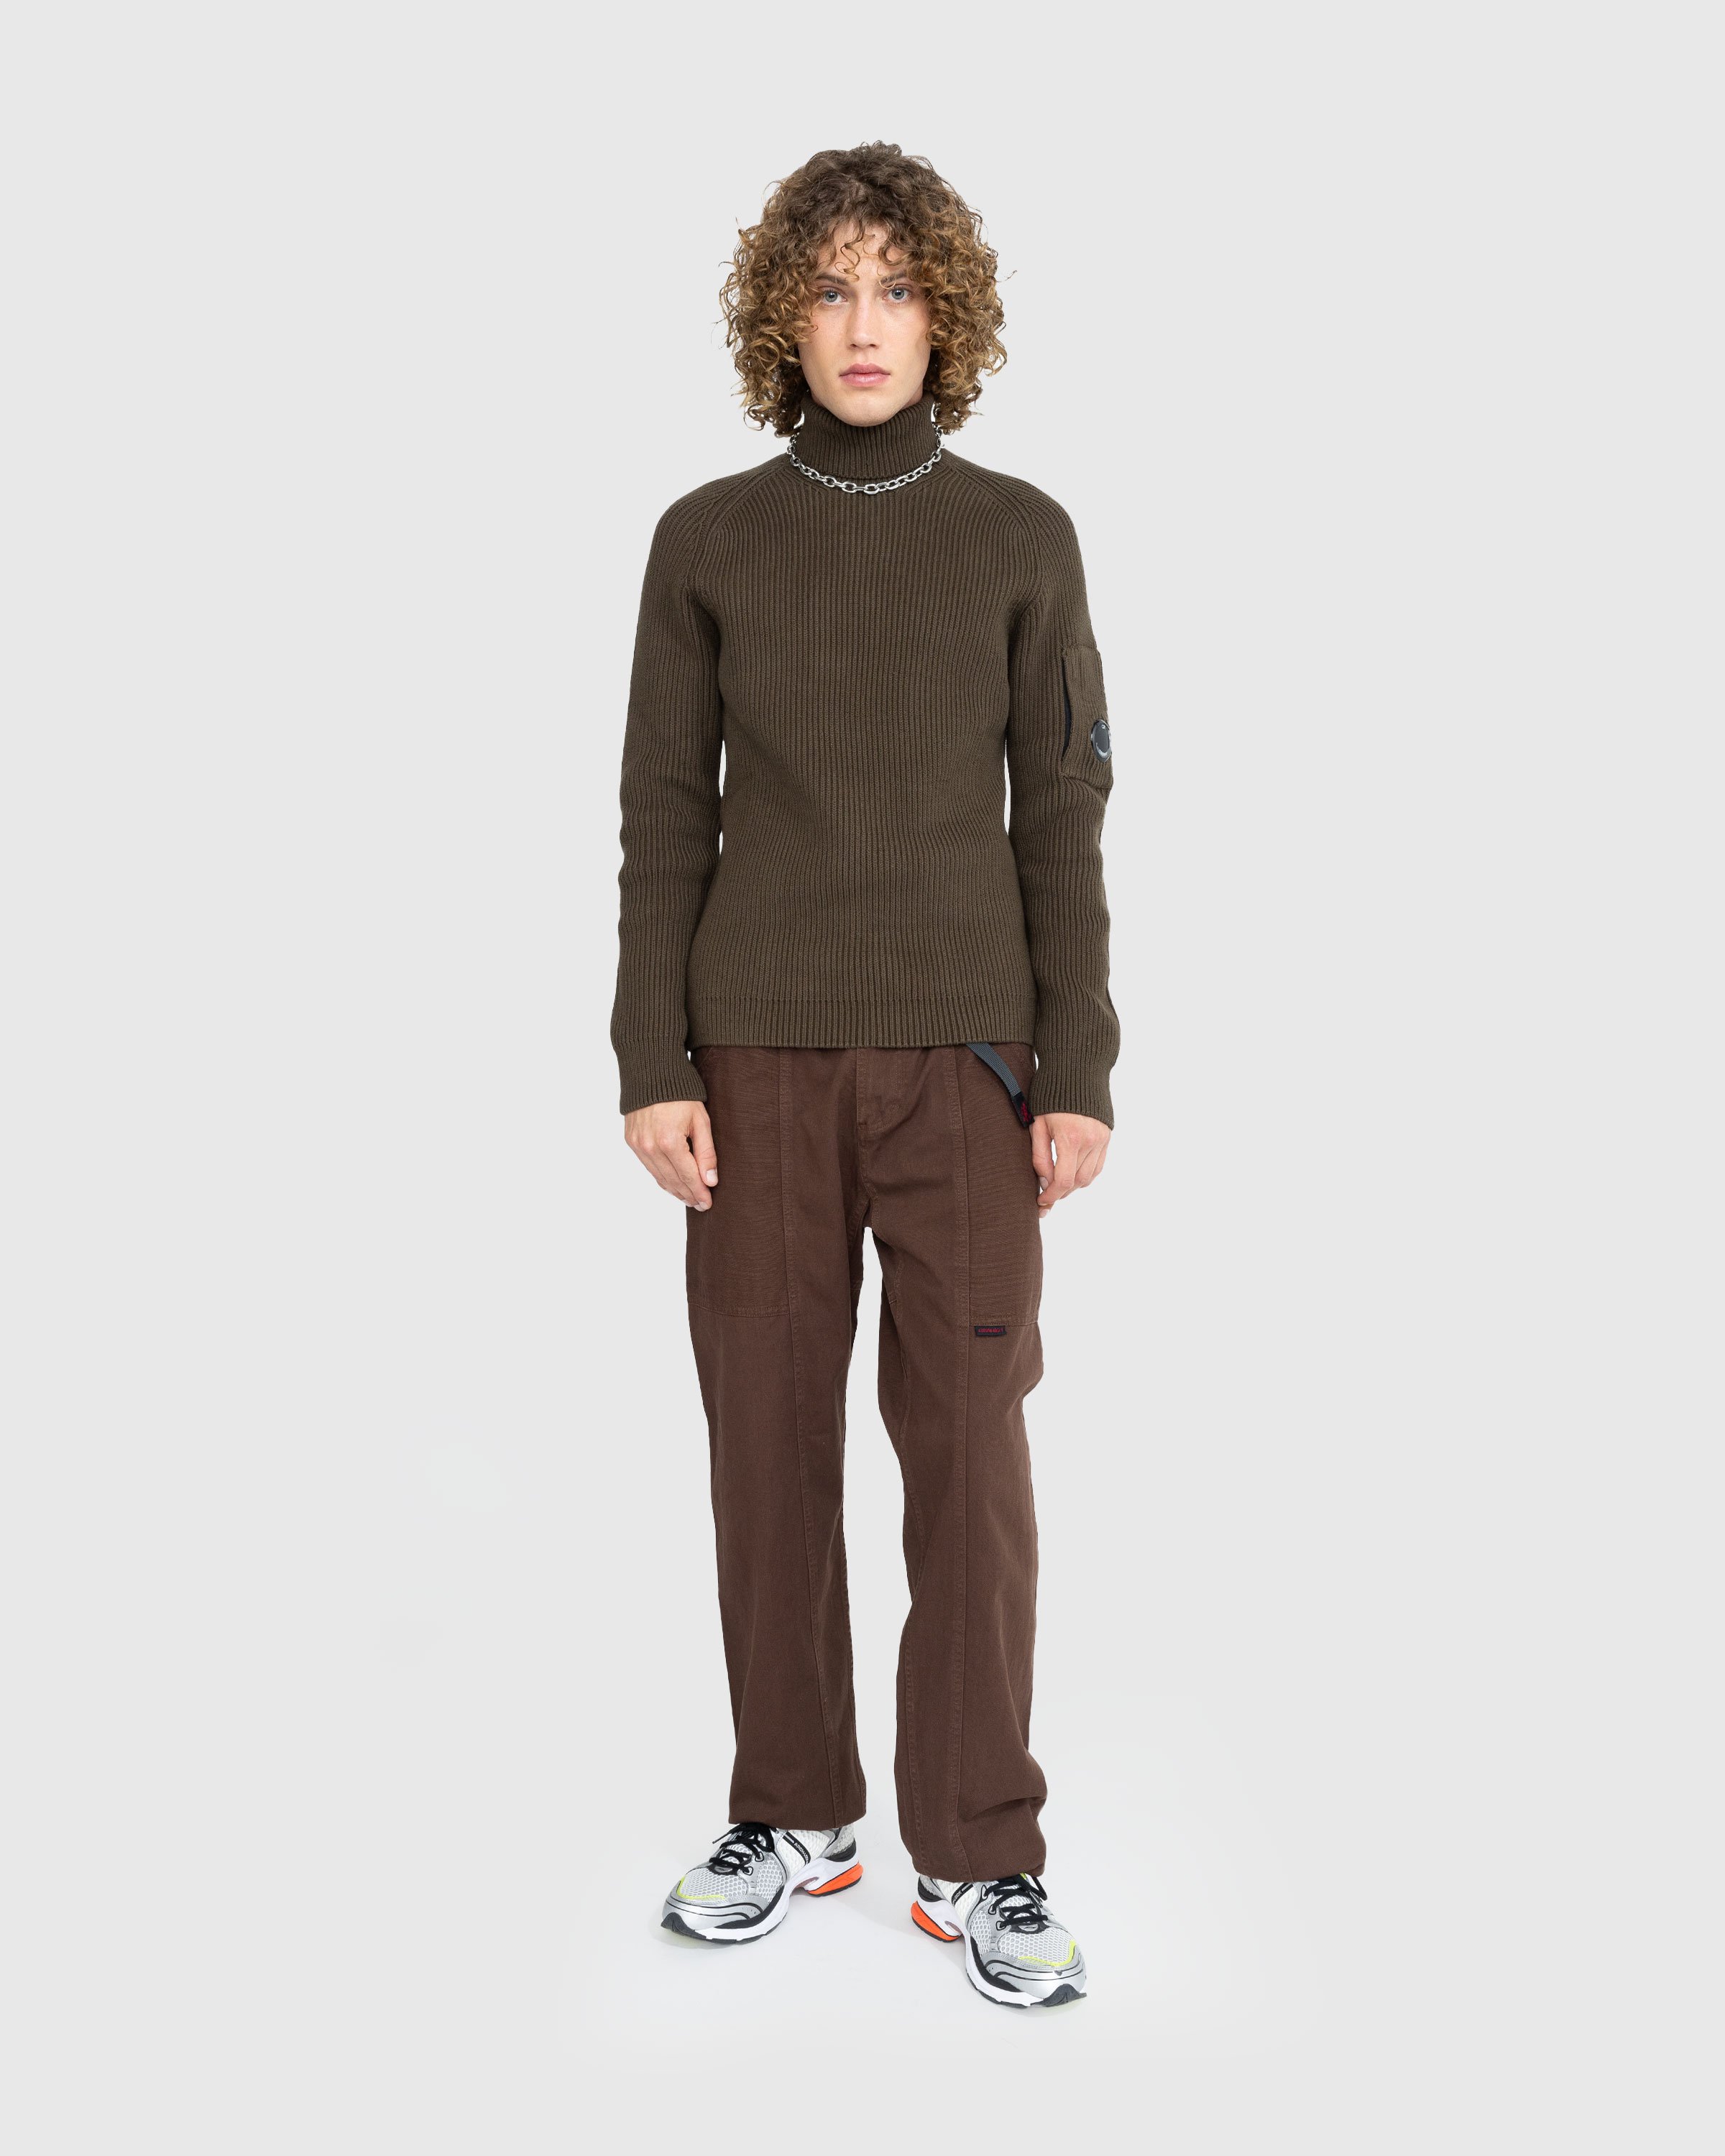 Gramicci - GADGET PANT - Clothing - Brown - Image 2